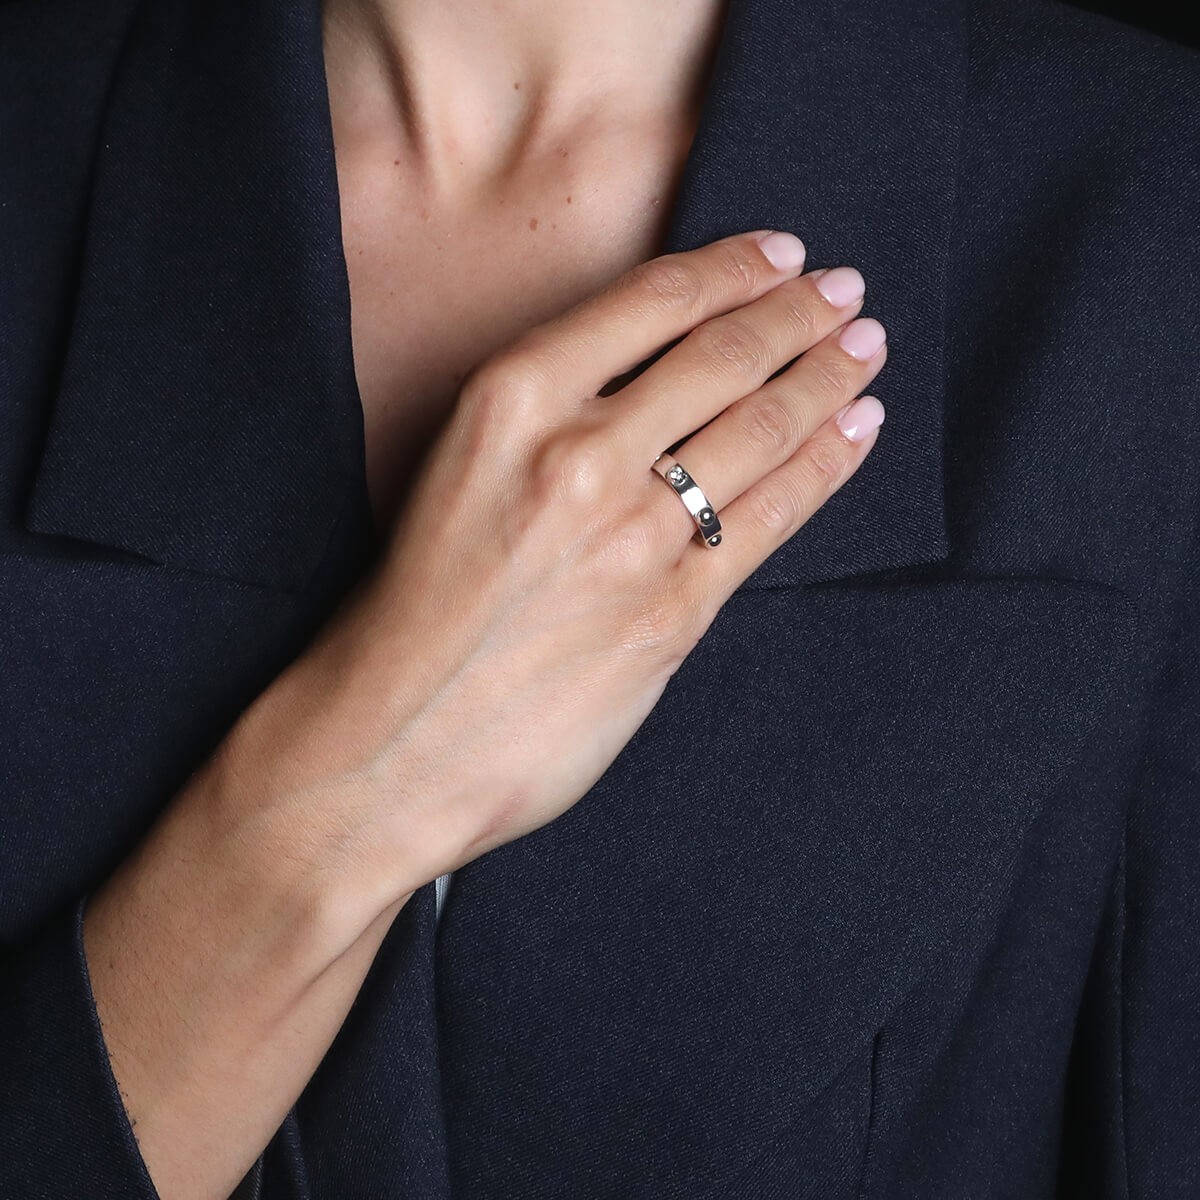 Louis Vuitton 18k & Vs Diamond Bague Clous Ring